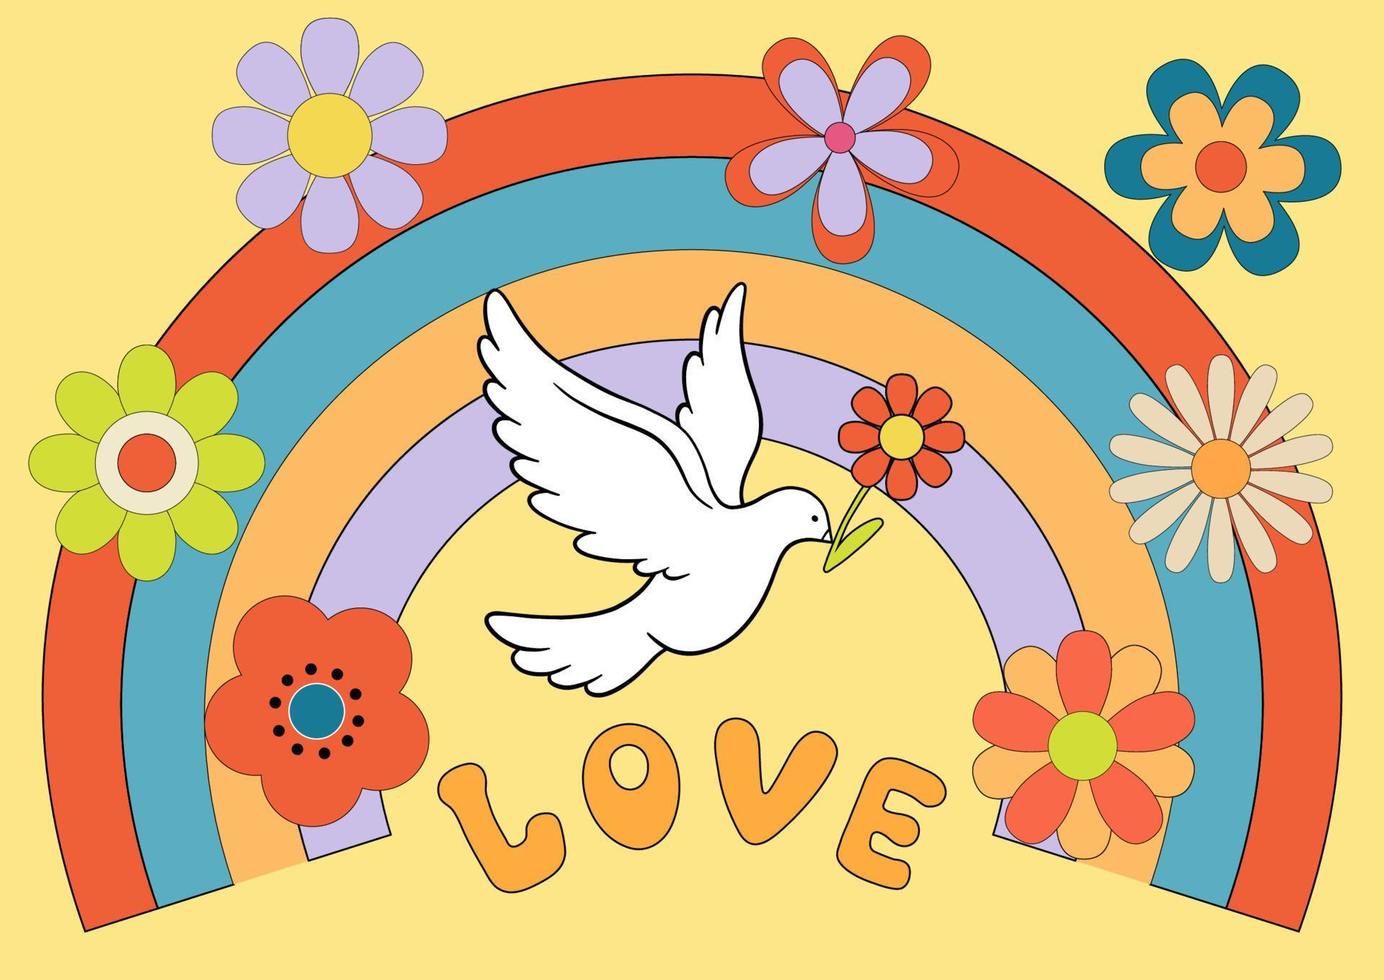 cartel maravilloso de los años 70 con paloma de la paz. estampado retro con elementos hippies. paisaje psicodélico de dibujos animados con margaritas de flores hippies y arco iris vector